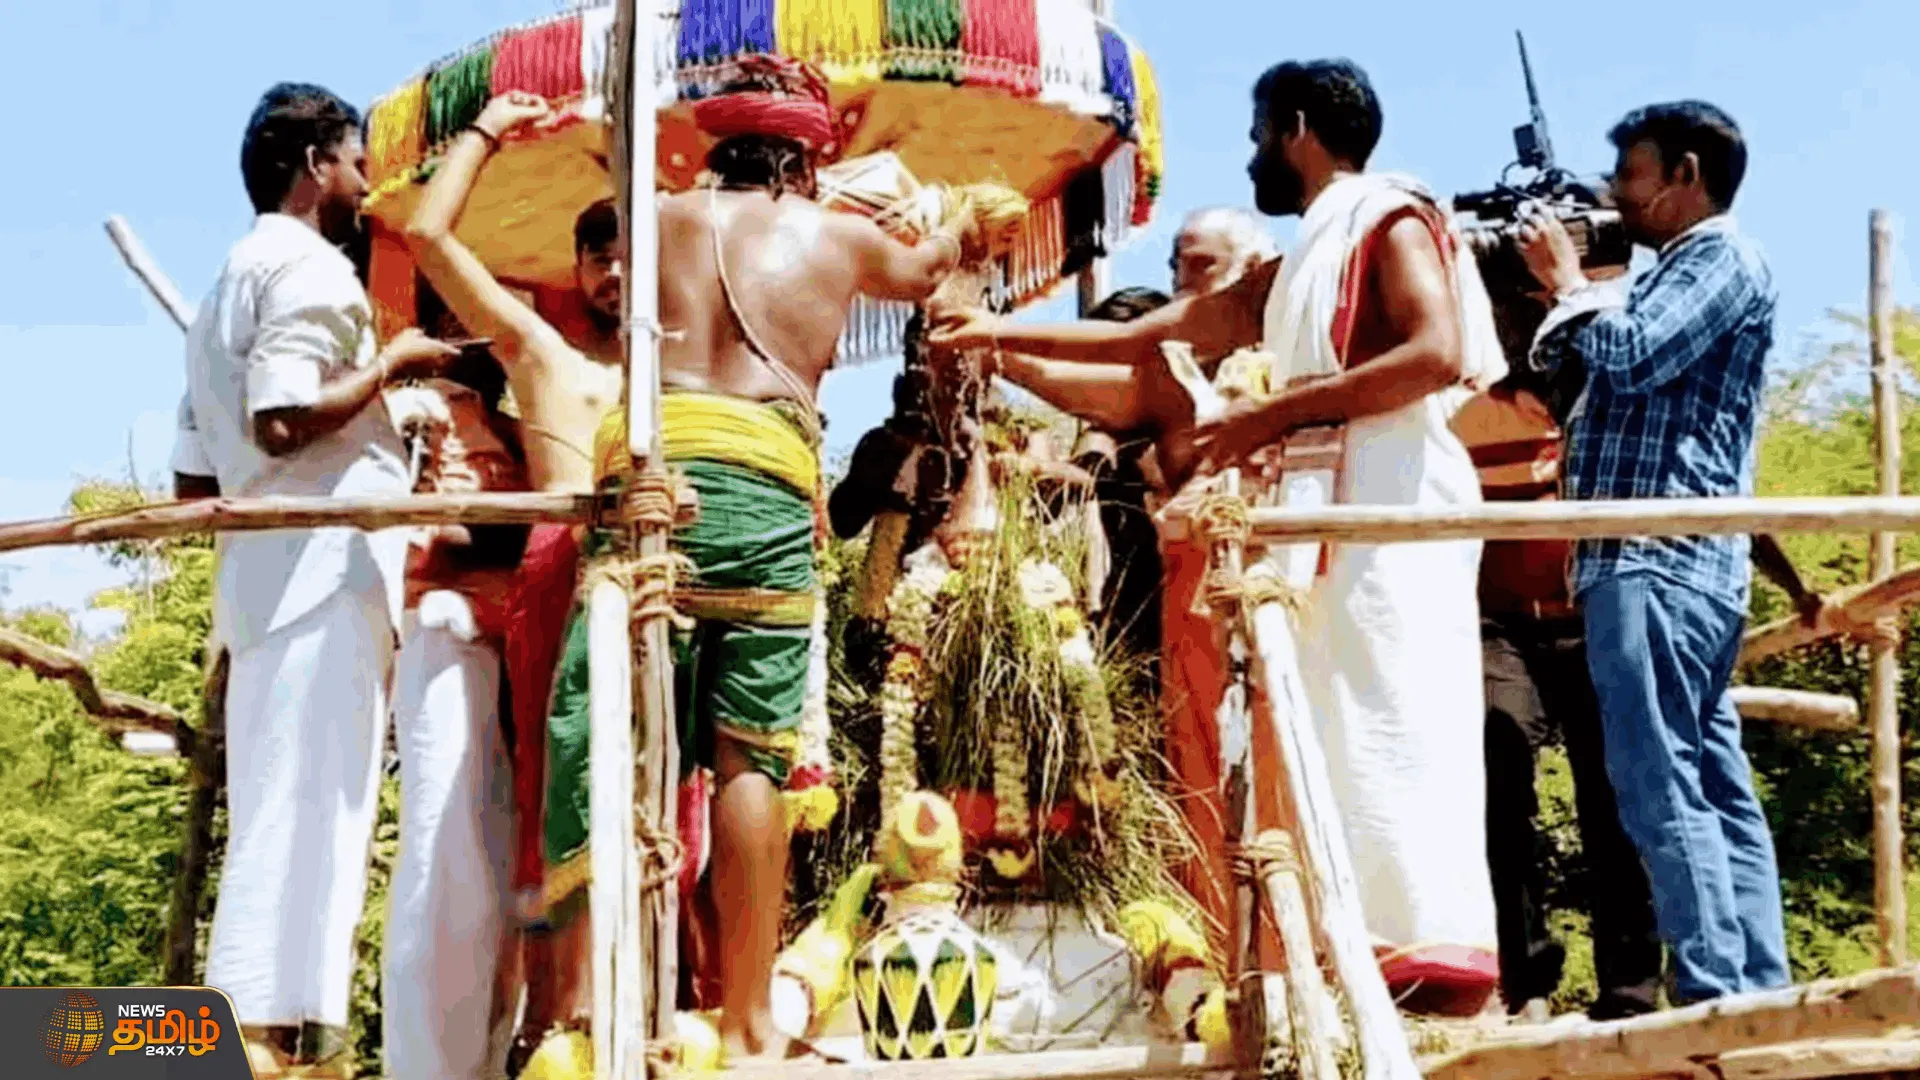  சீனிவாசப்பெருமாள் கோயில் மகா கும்பாபிஷேக விழா  கும்பாபிஷேக விழாவிற்கான யாக பூஜை தொடக்கம் 